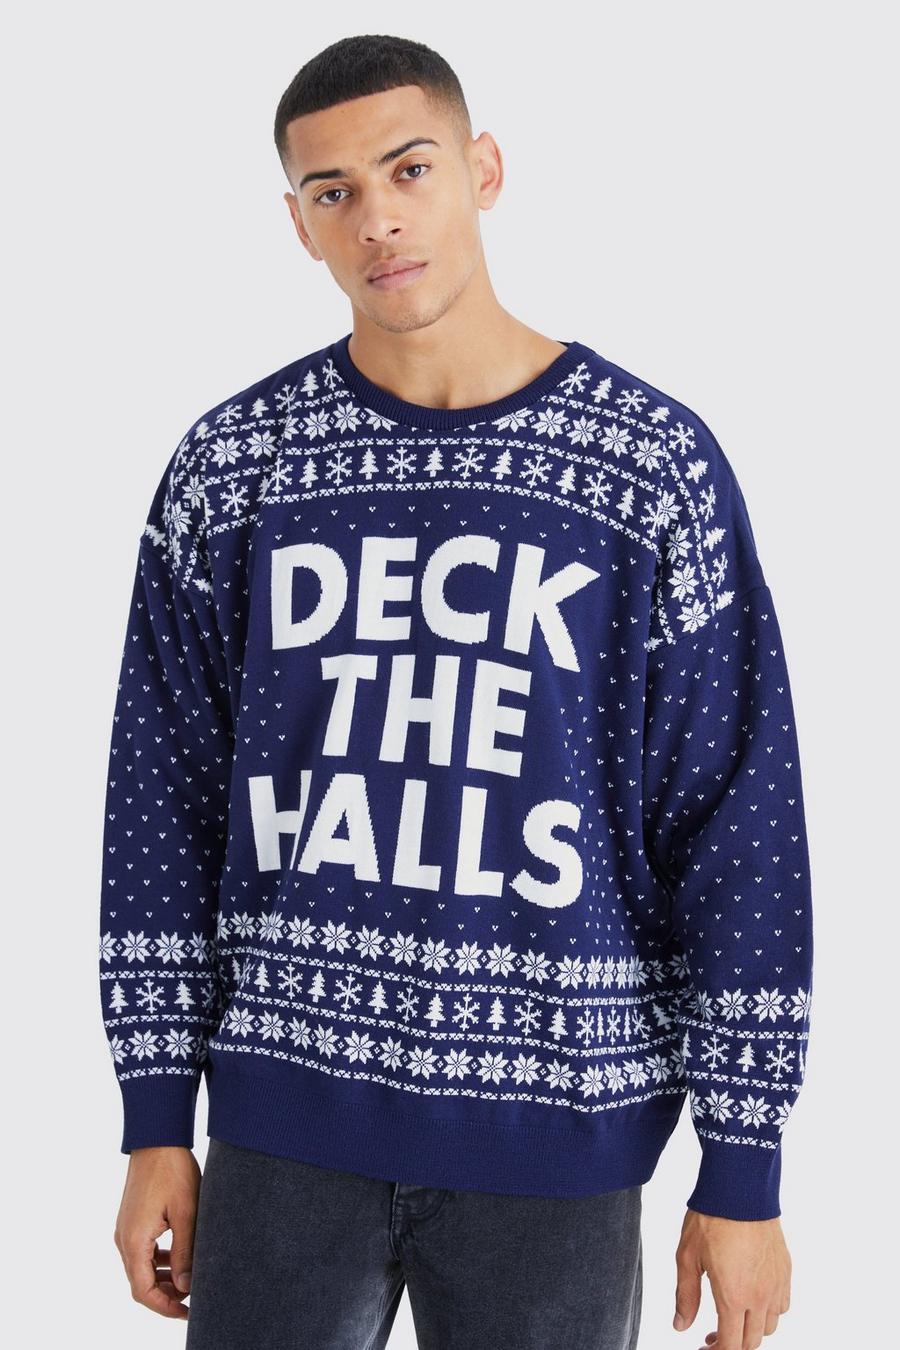 Maglione natalizio oversize Deck The Halls, Navy azul marino